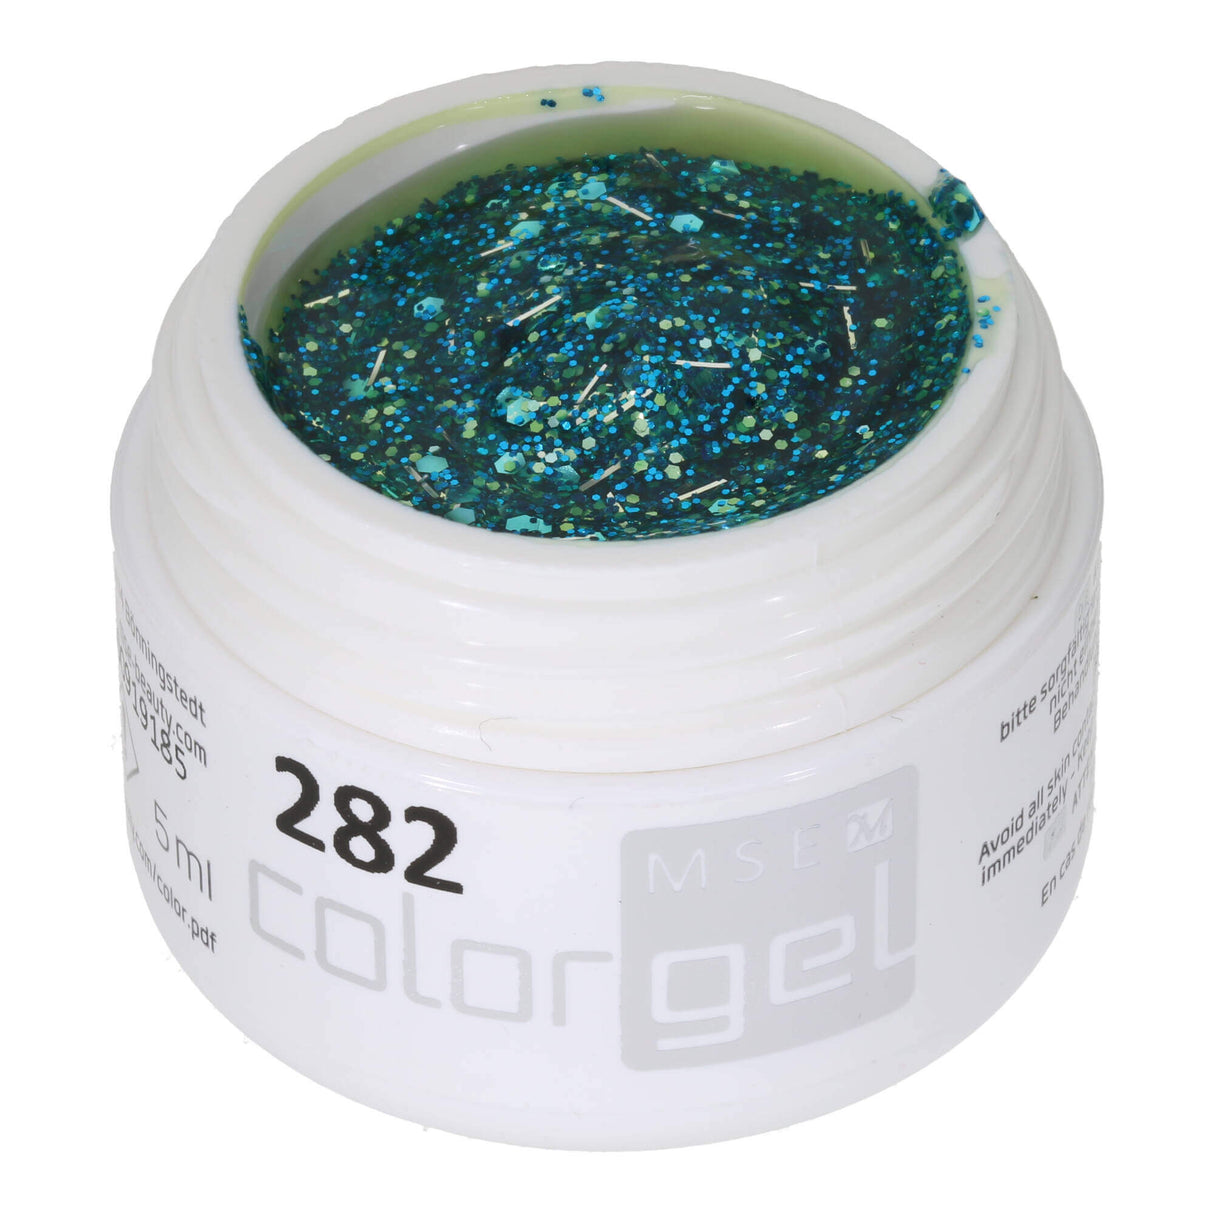 # 282 Premium-GLITTER Color Gel 5ml Gel transparent avec des fils de paillettes bleues fines, grossières de vert de mai et de paillettes d'argent